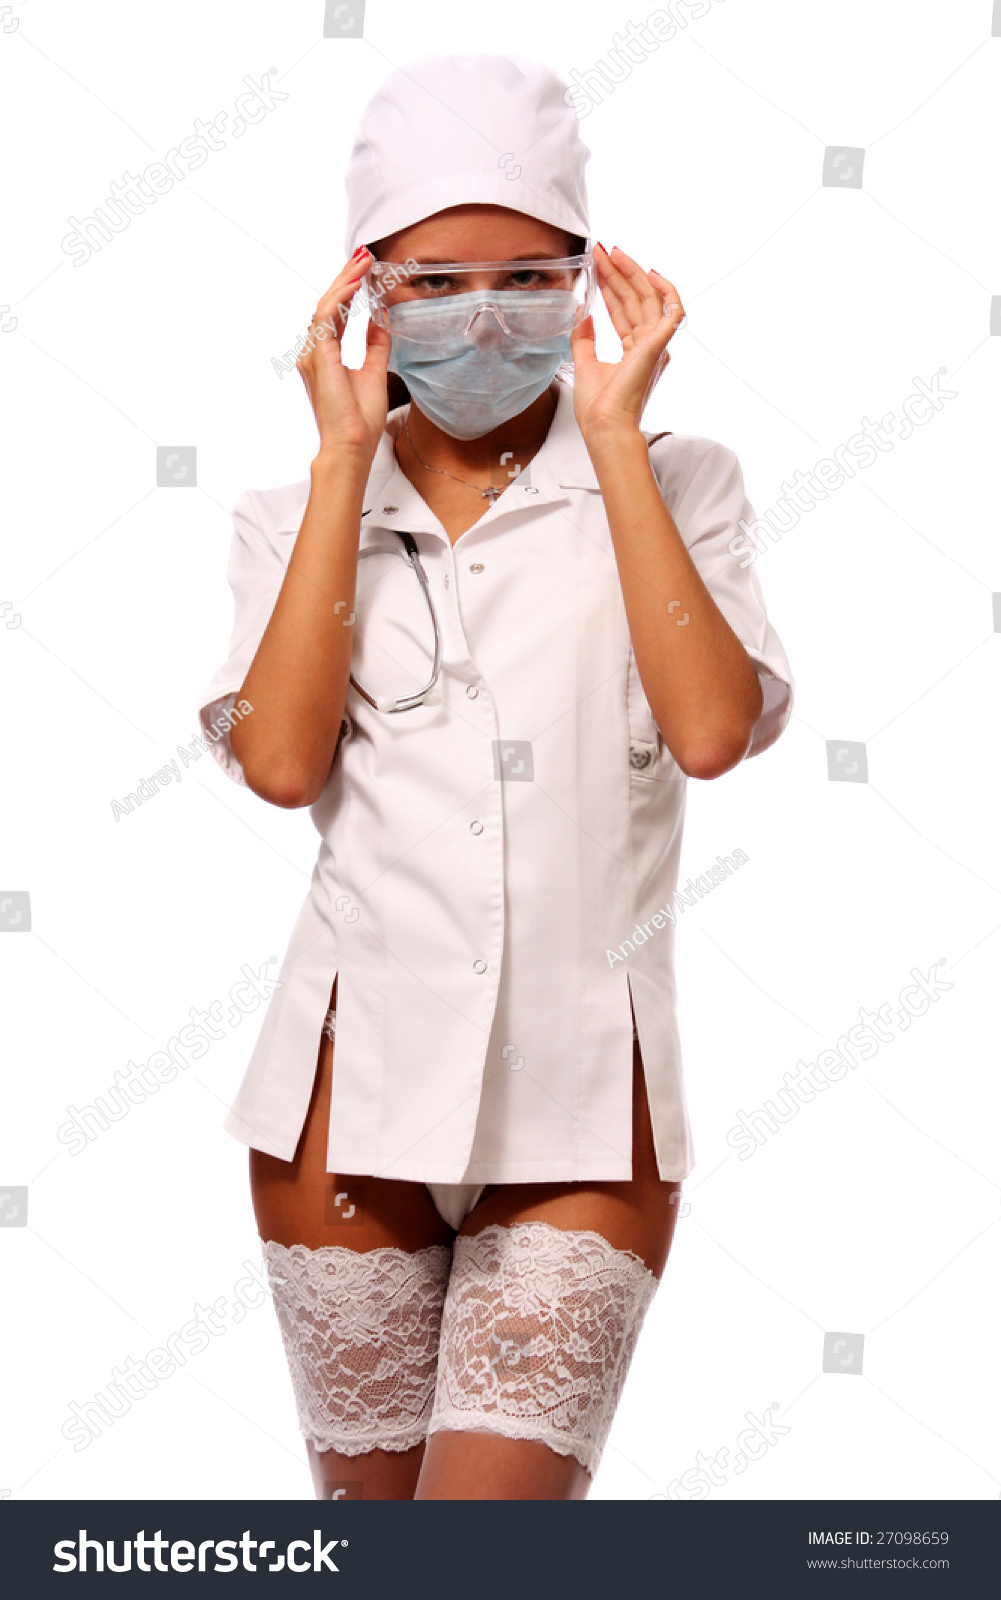 Латиноамериканская медсестра в очках раздевается до чулков в палате